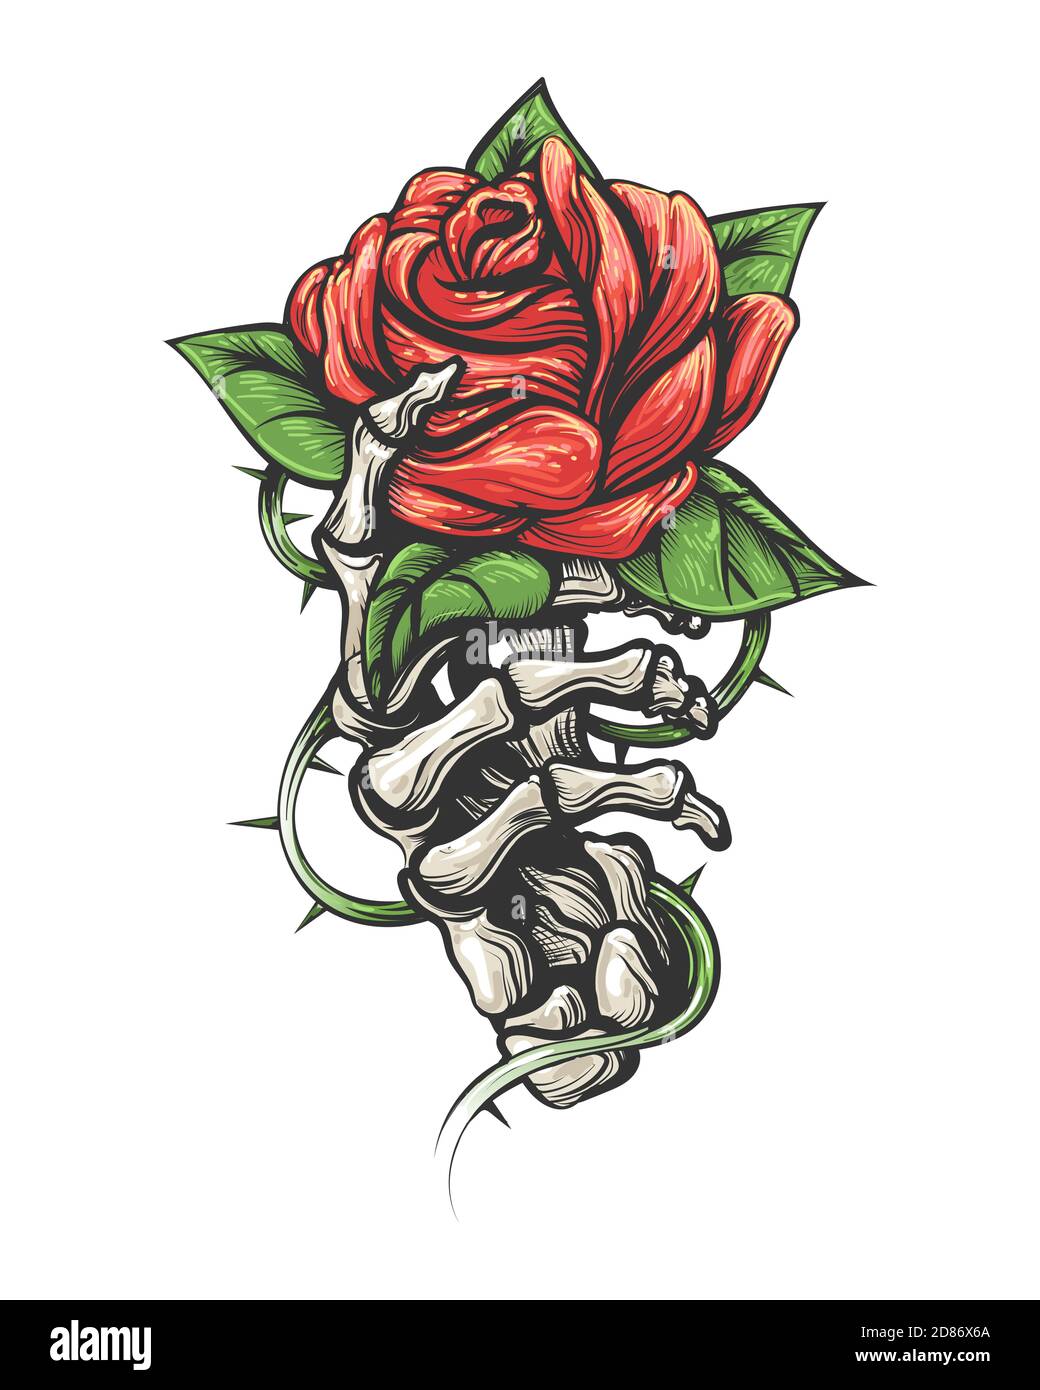 Tattoo von Rosenblüte in menschlichen Skelett Hand isoliert auf weißem Hintergrund. Vektorgrafik. Stock Vektor